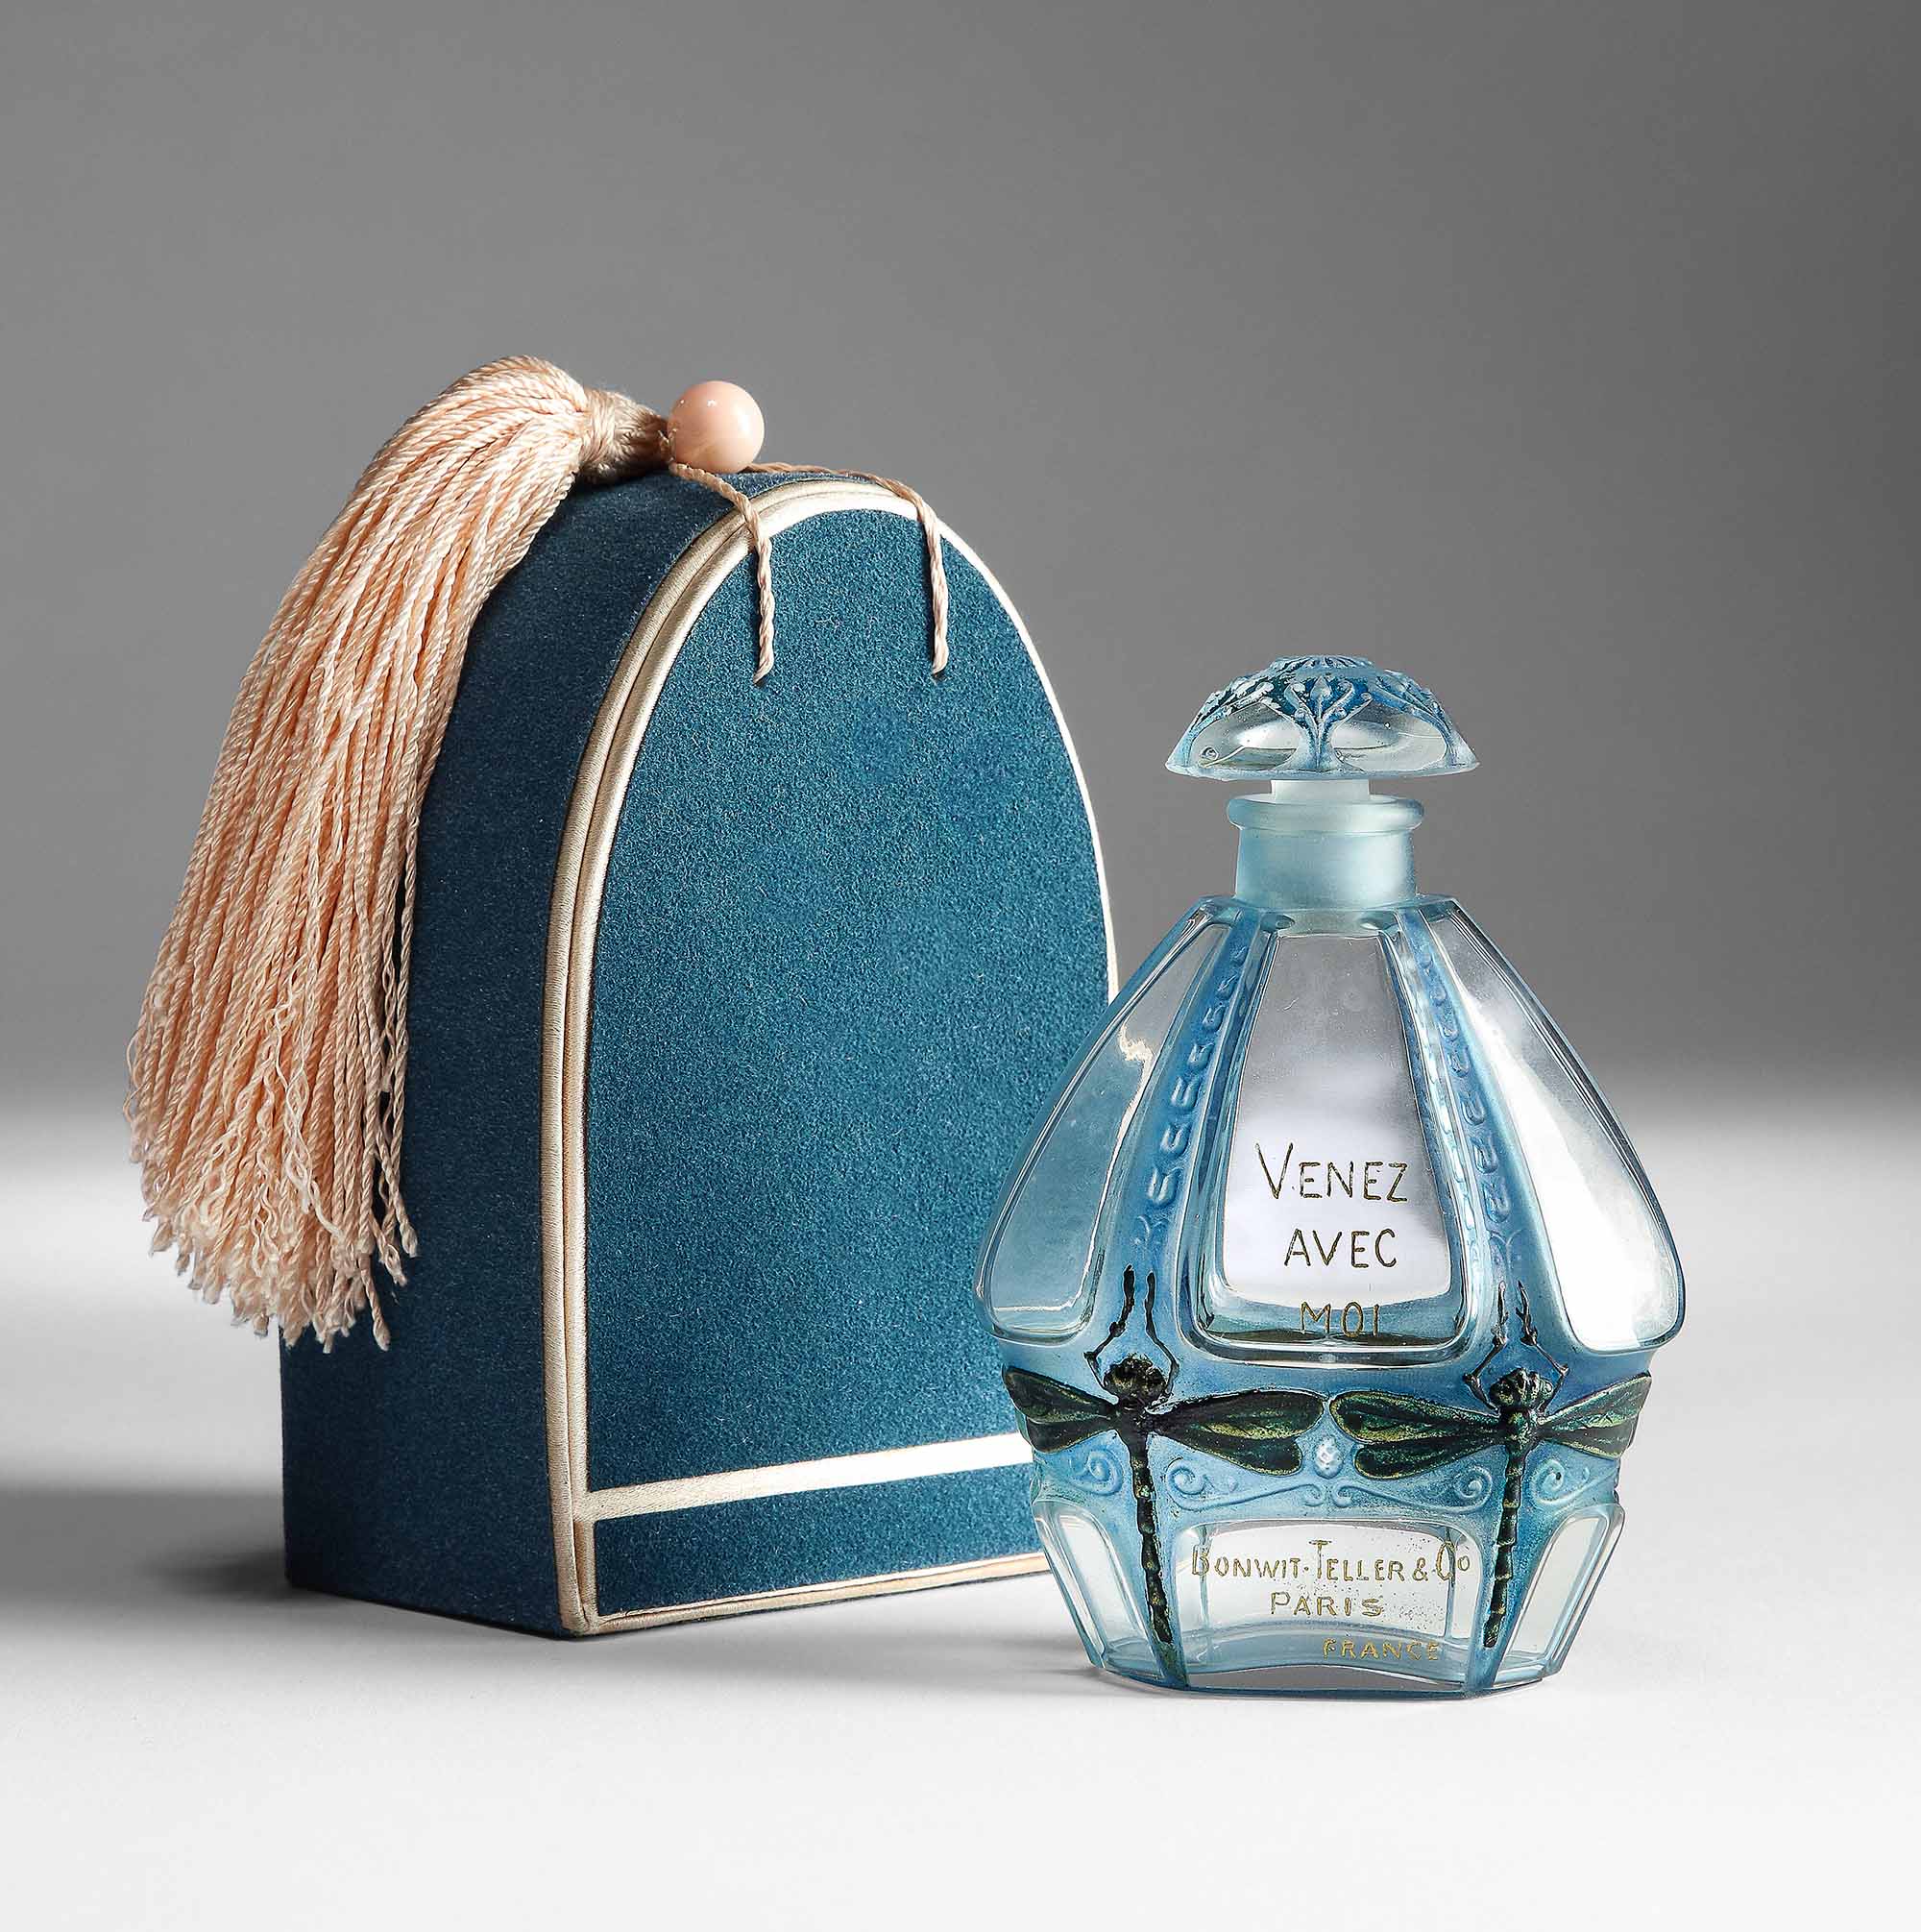 Architecture-Designed Luxury Perfume Bottles : Les Extraits